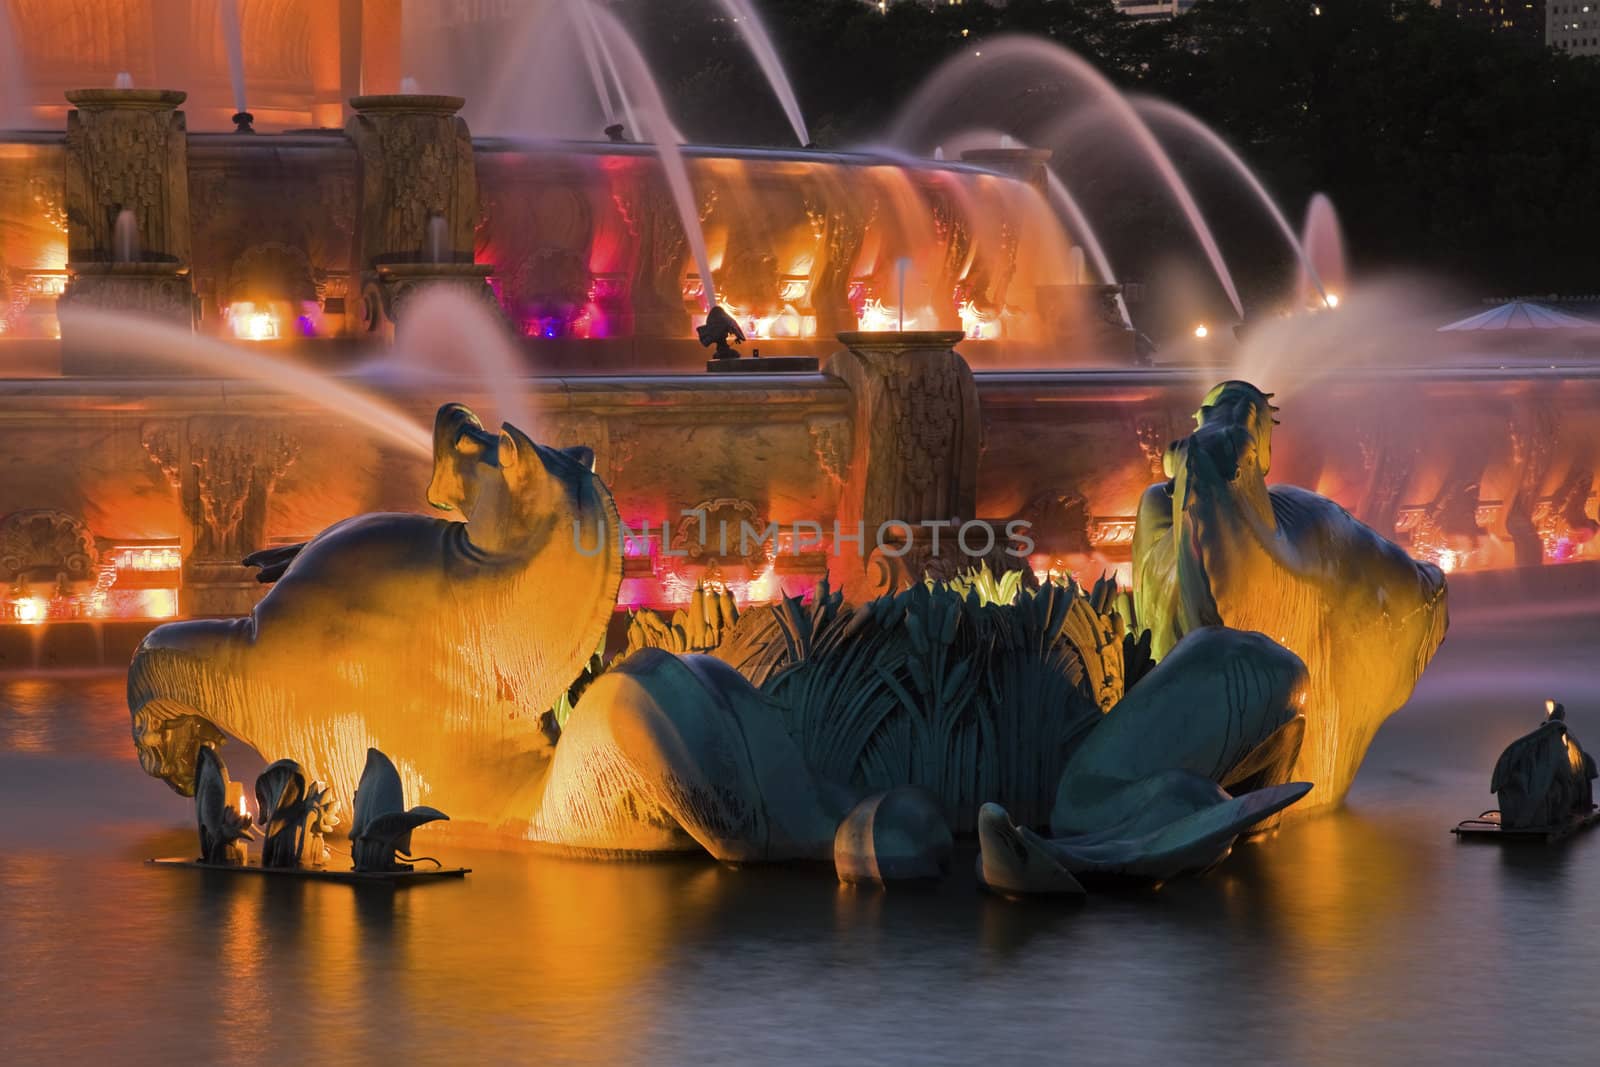 Buckingham Fountain detail - Chicago, Illinois, USA.